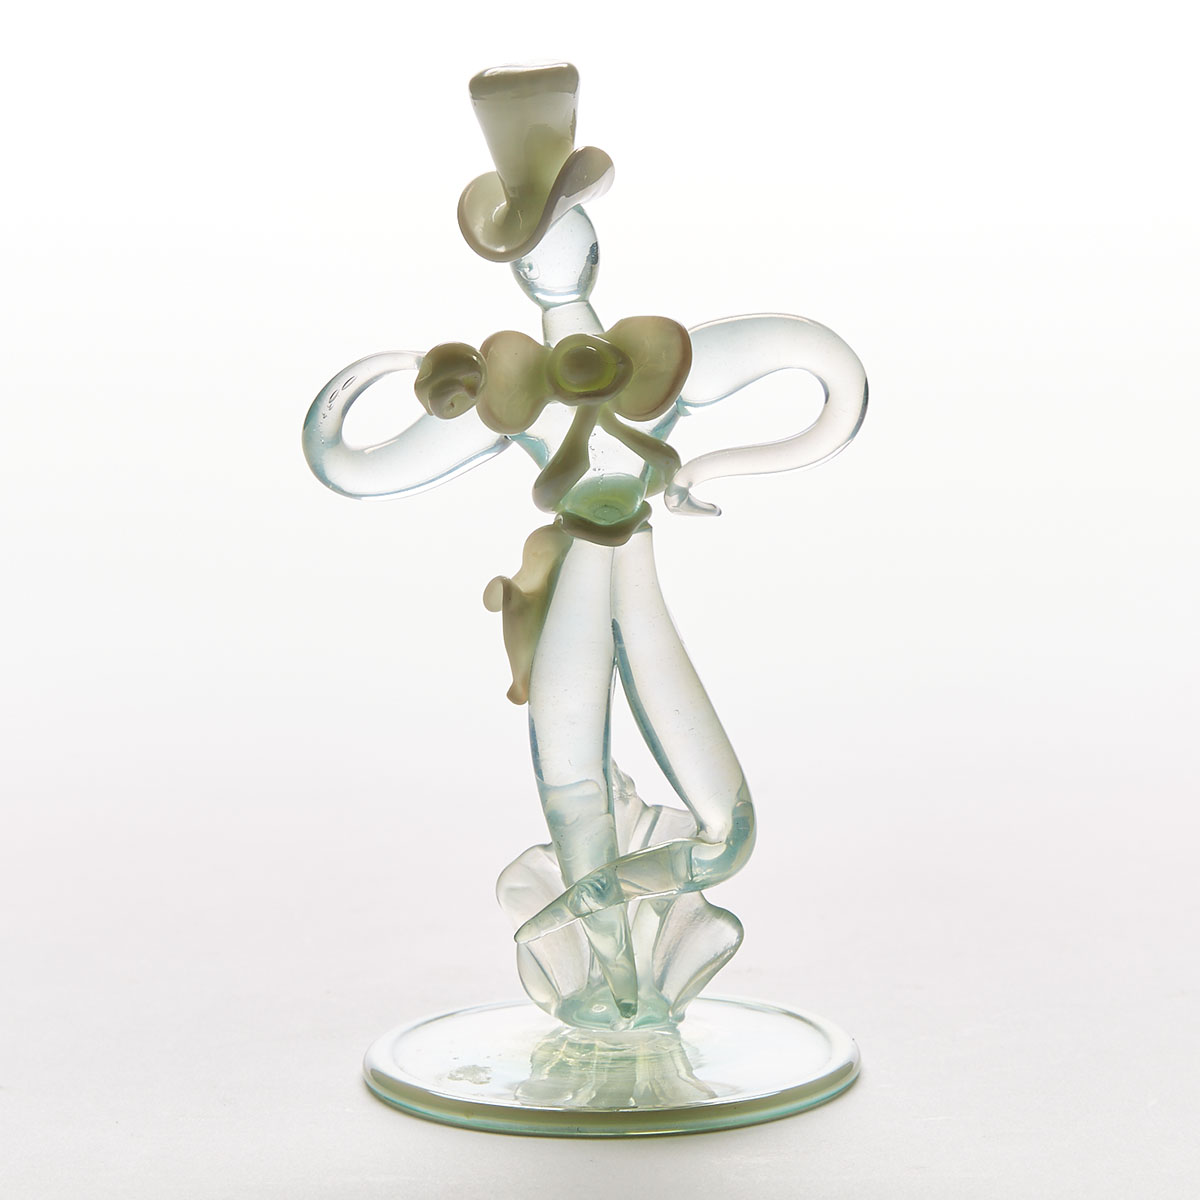 Murano Glass Figure, probably Flavio Poli for Seguso Vetri d’Arte, mid-20th century